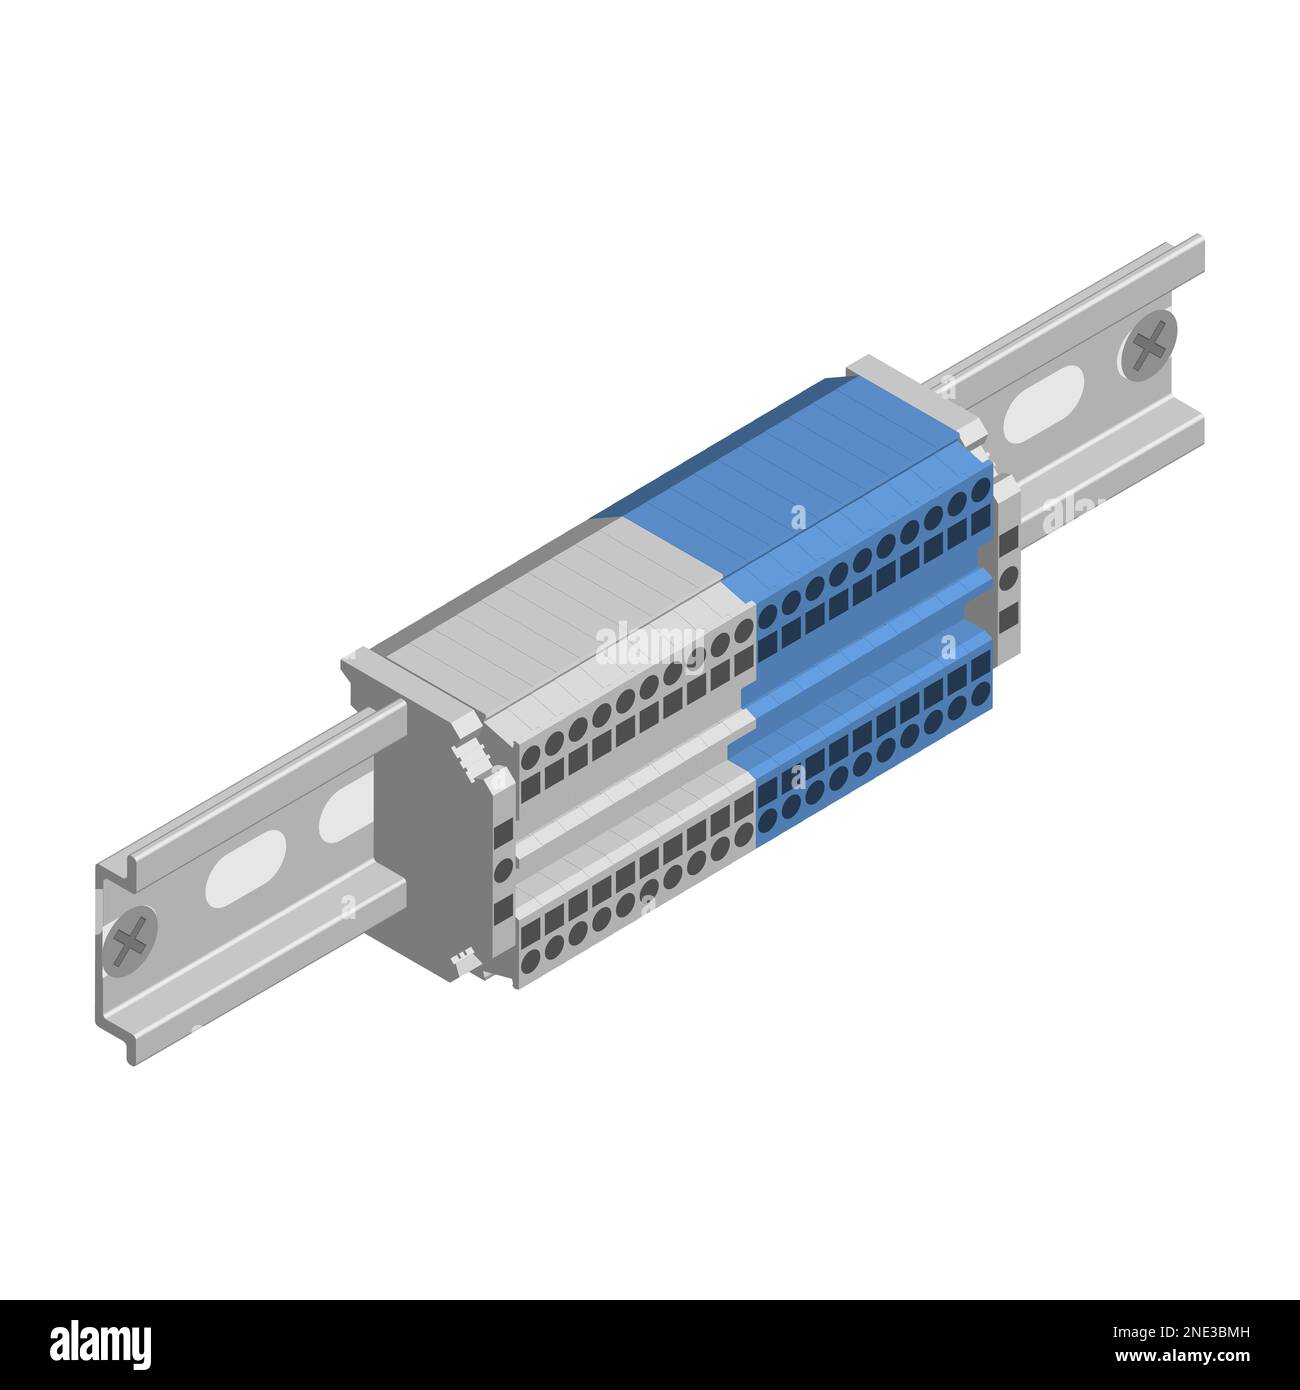 Anschlussklemmenblöcke zum Verbinden von Drähten auf einer din-Schiene. Isometrischer 3D-Stil, Vektordarstellung. Stock Vektor